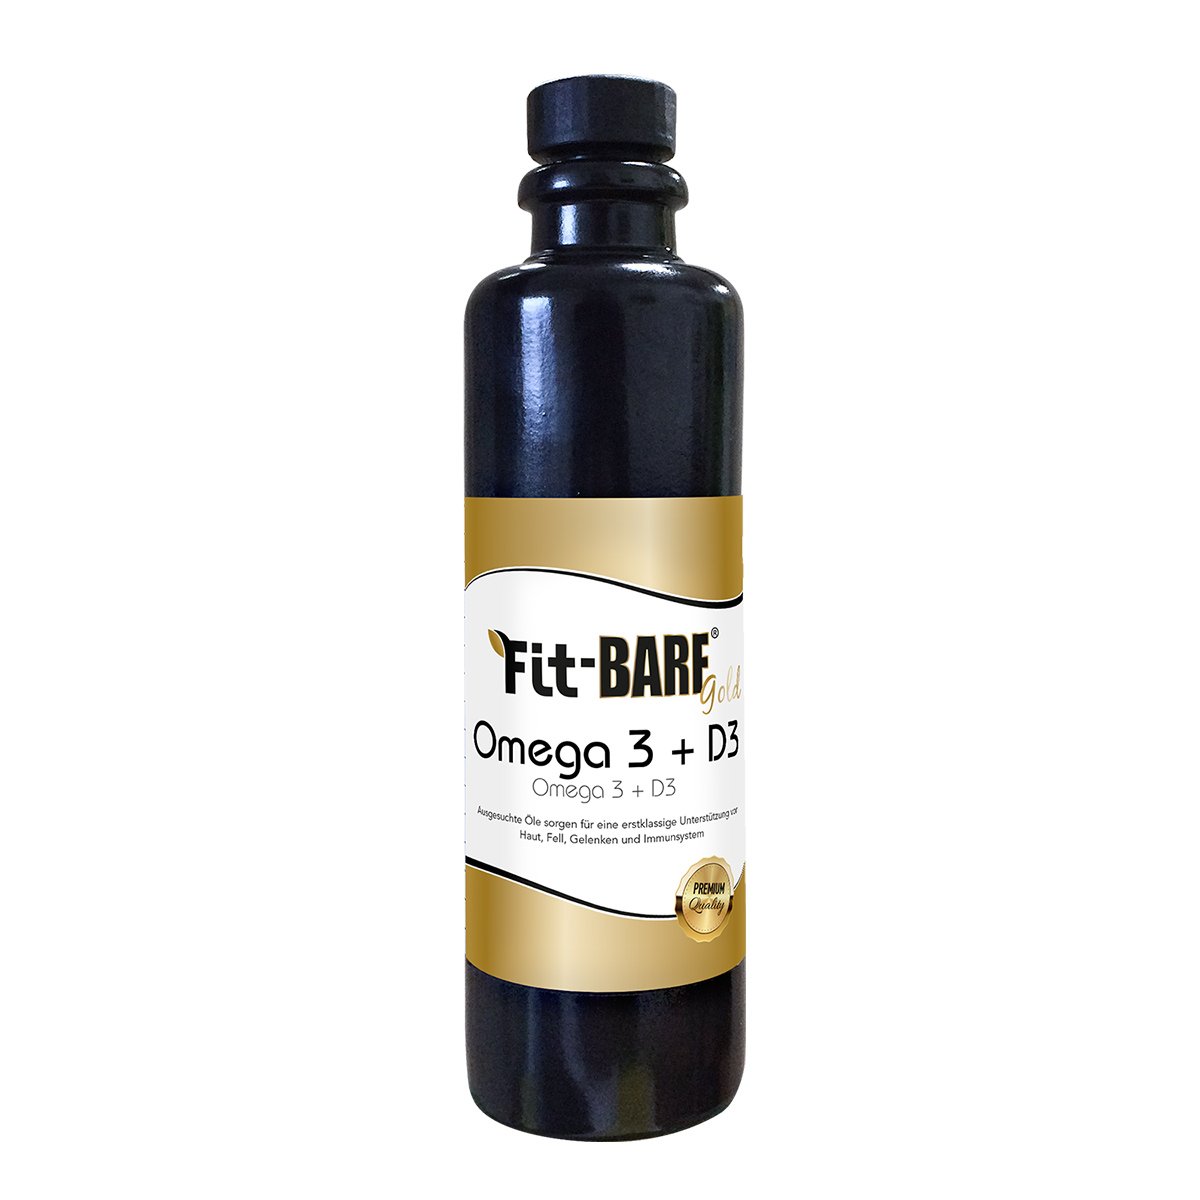 cdVet Fit-BARF Gold omega-3+D3, 200 ml